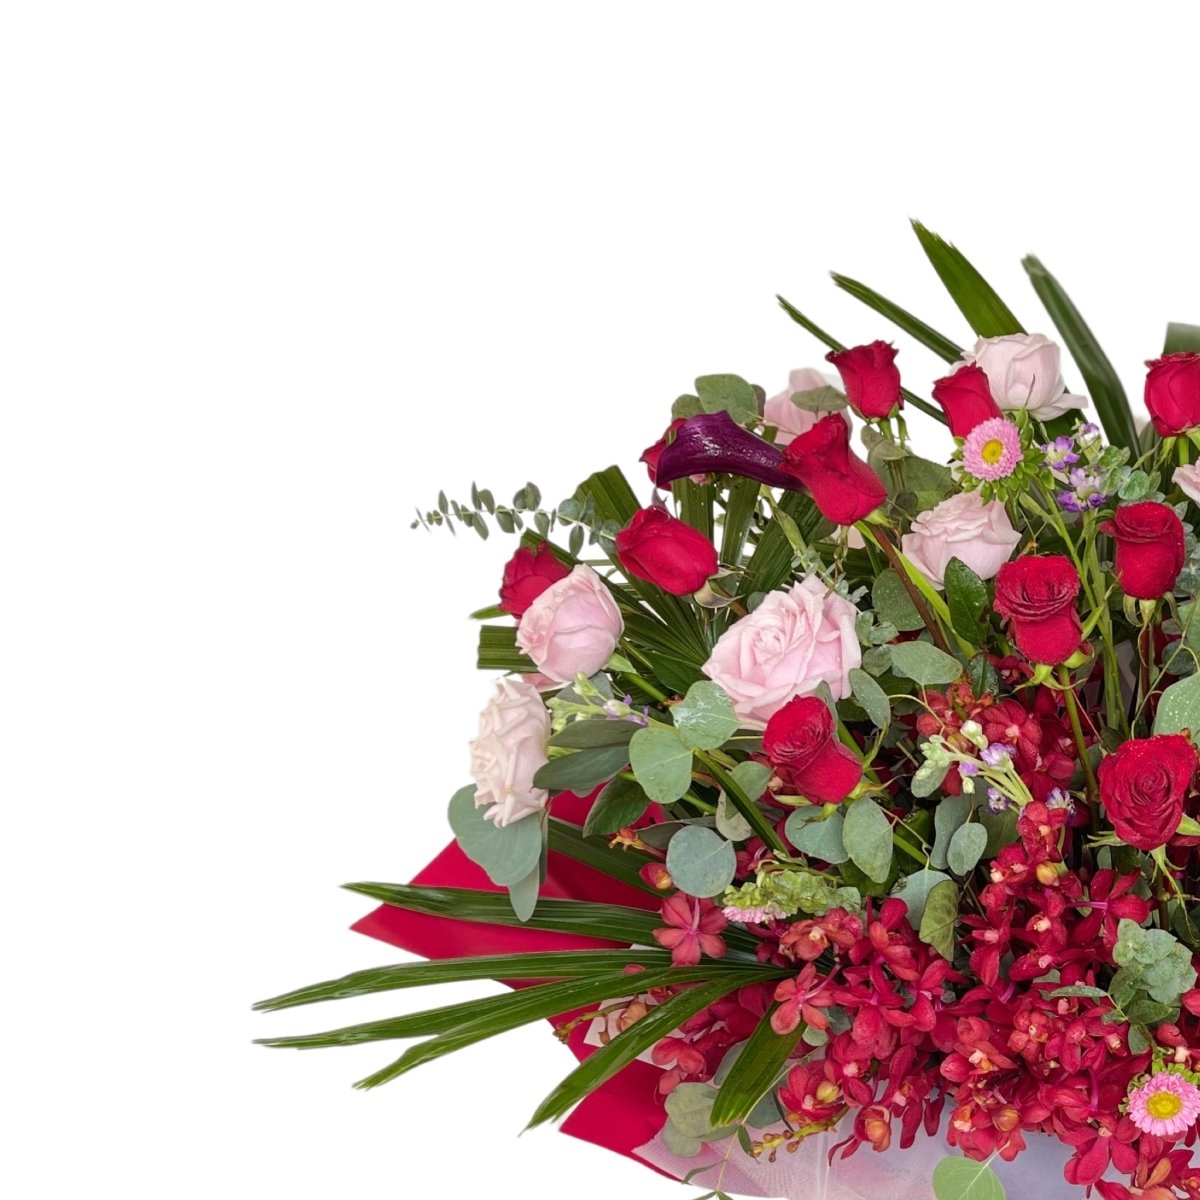 Omakase Flower Stand - Flowers - Deluxe - Preserved Flowers & Fresh Flower Florist Gift Store